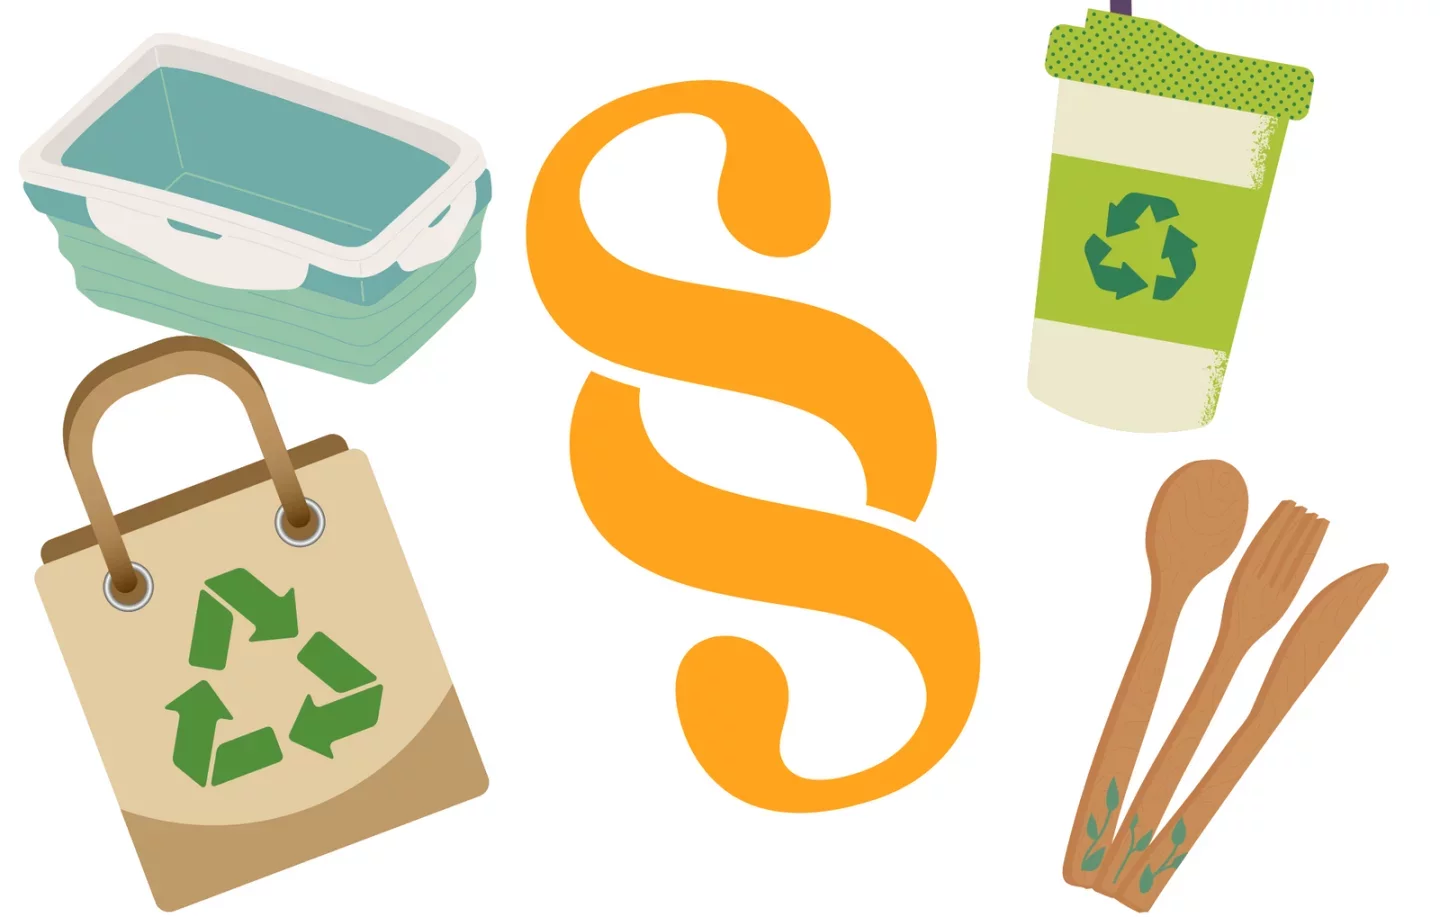 Bild mit Tüte, Einkaufskorb, Getränkebecher mit Recycle Logo, Holzbesteck und Paragraphen Symbol in der Mitte